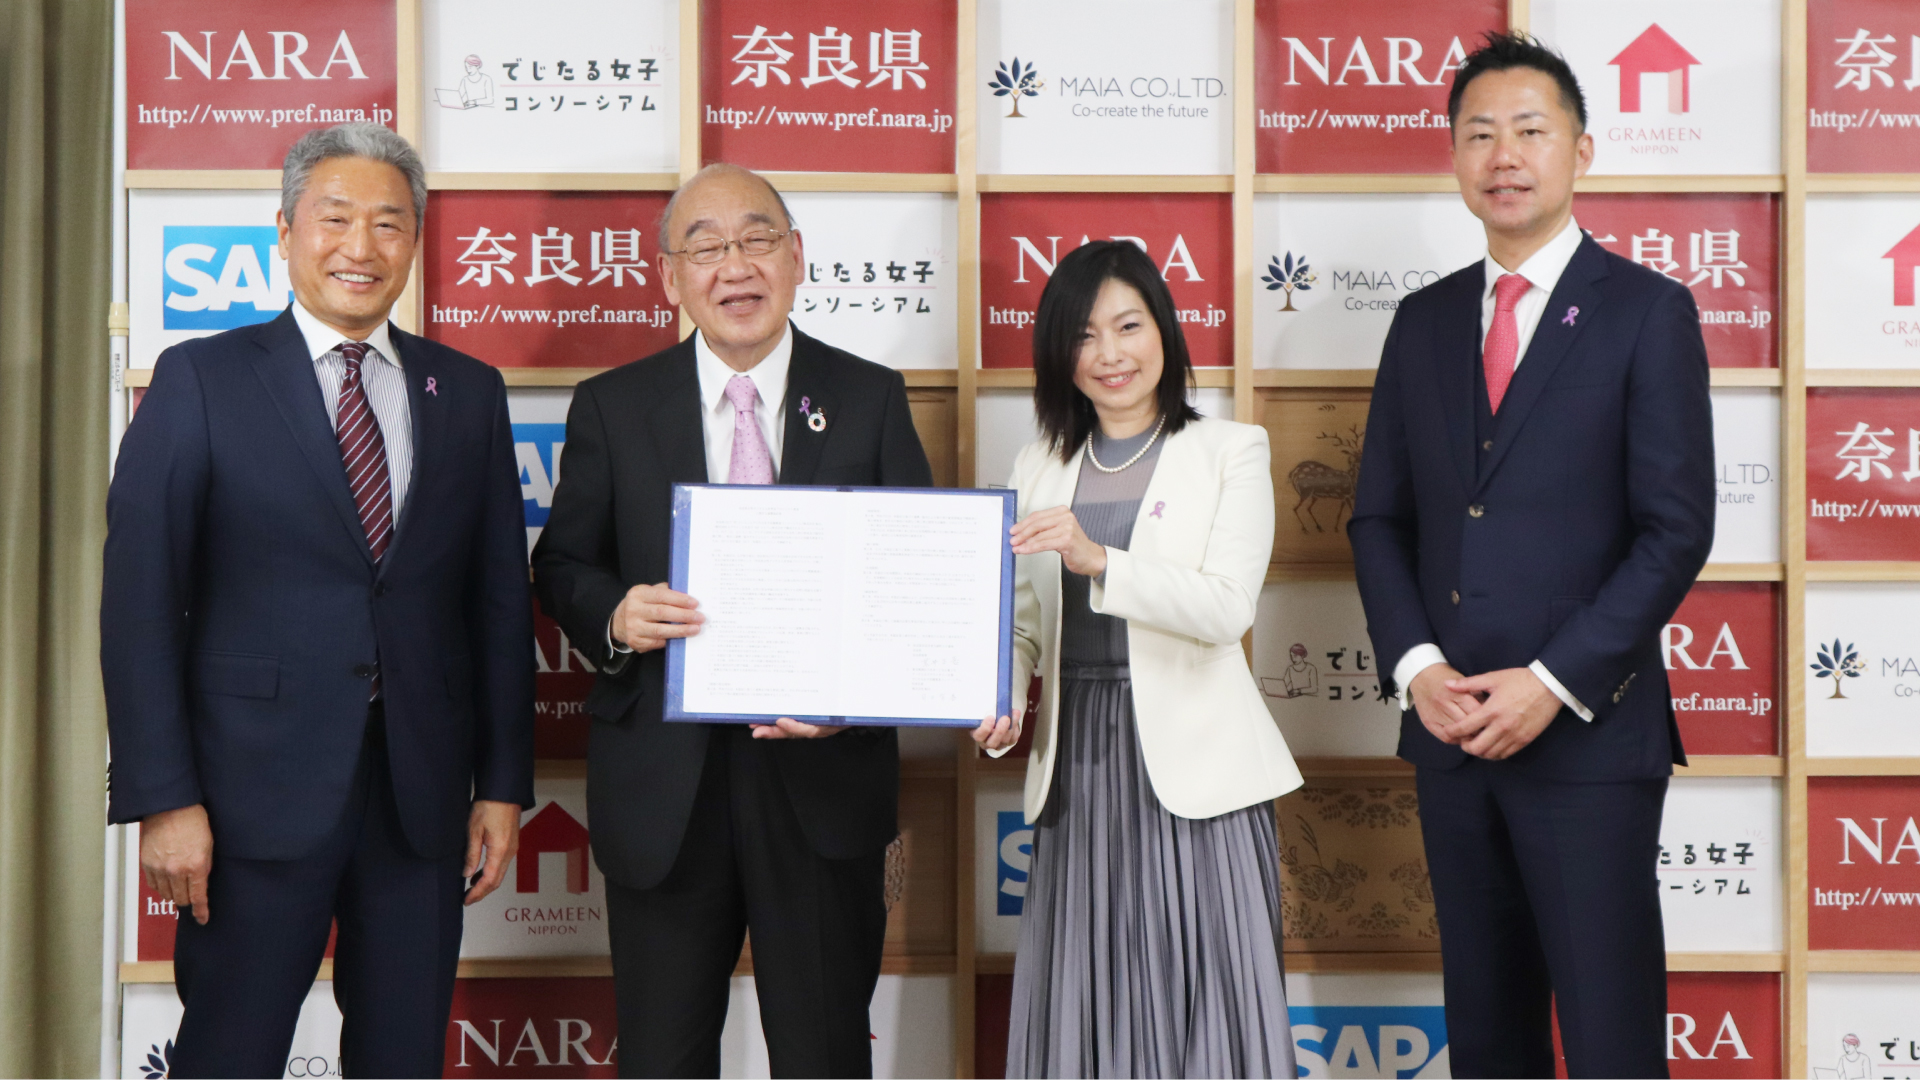 奈良県、「でじたる女子活躍推進コンソーシアム」と連携協定を締結[ニュース]